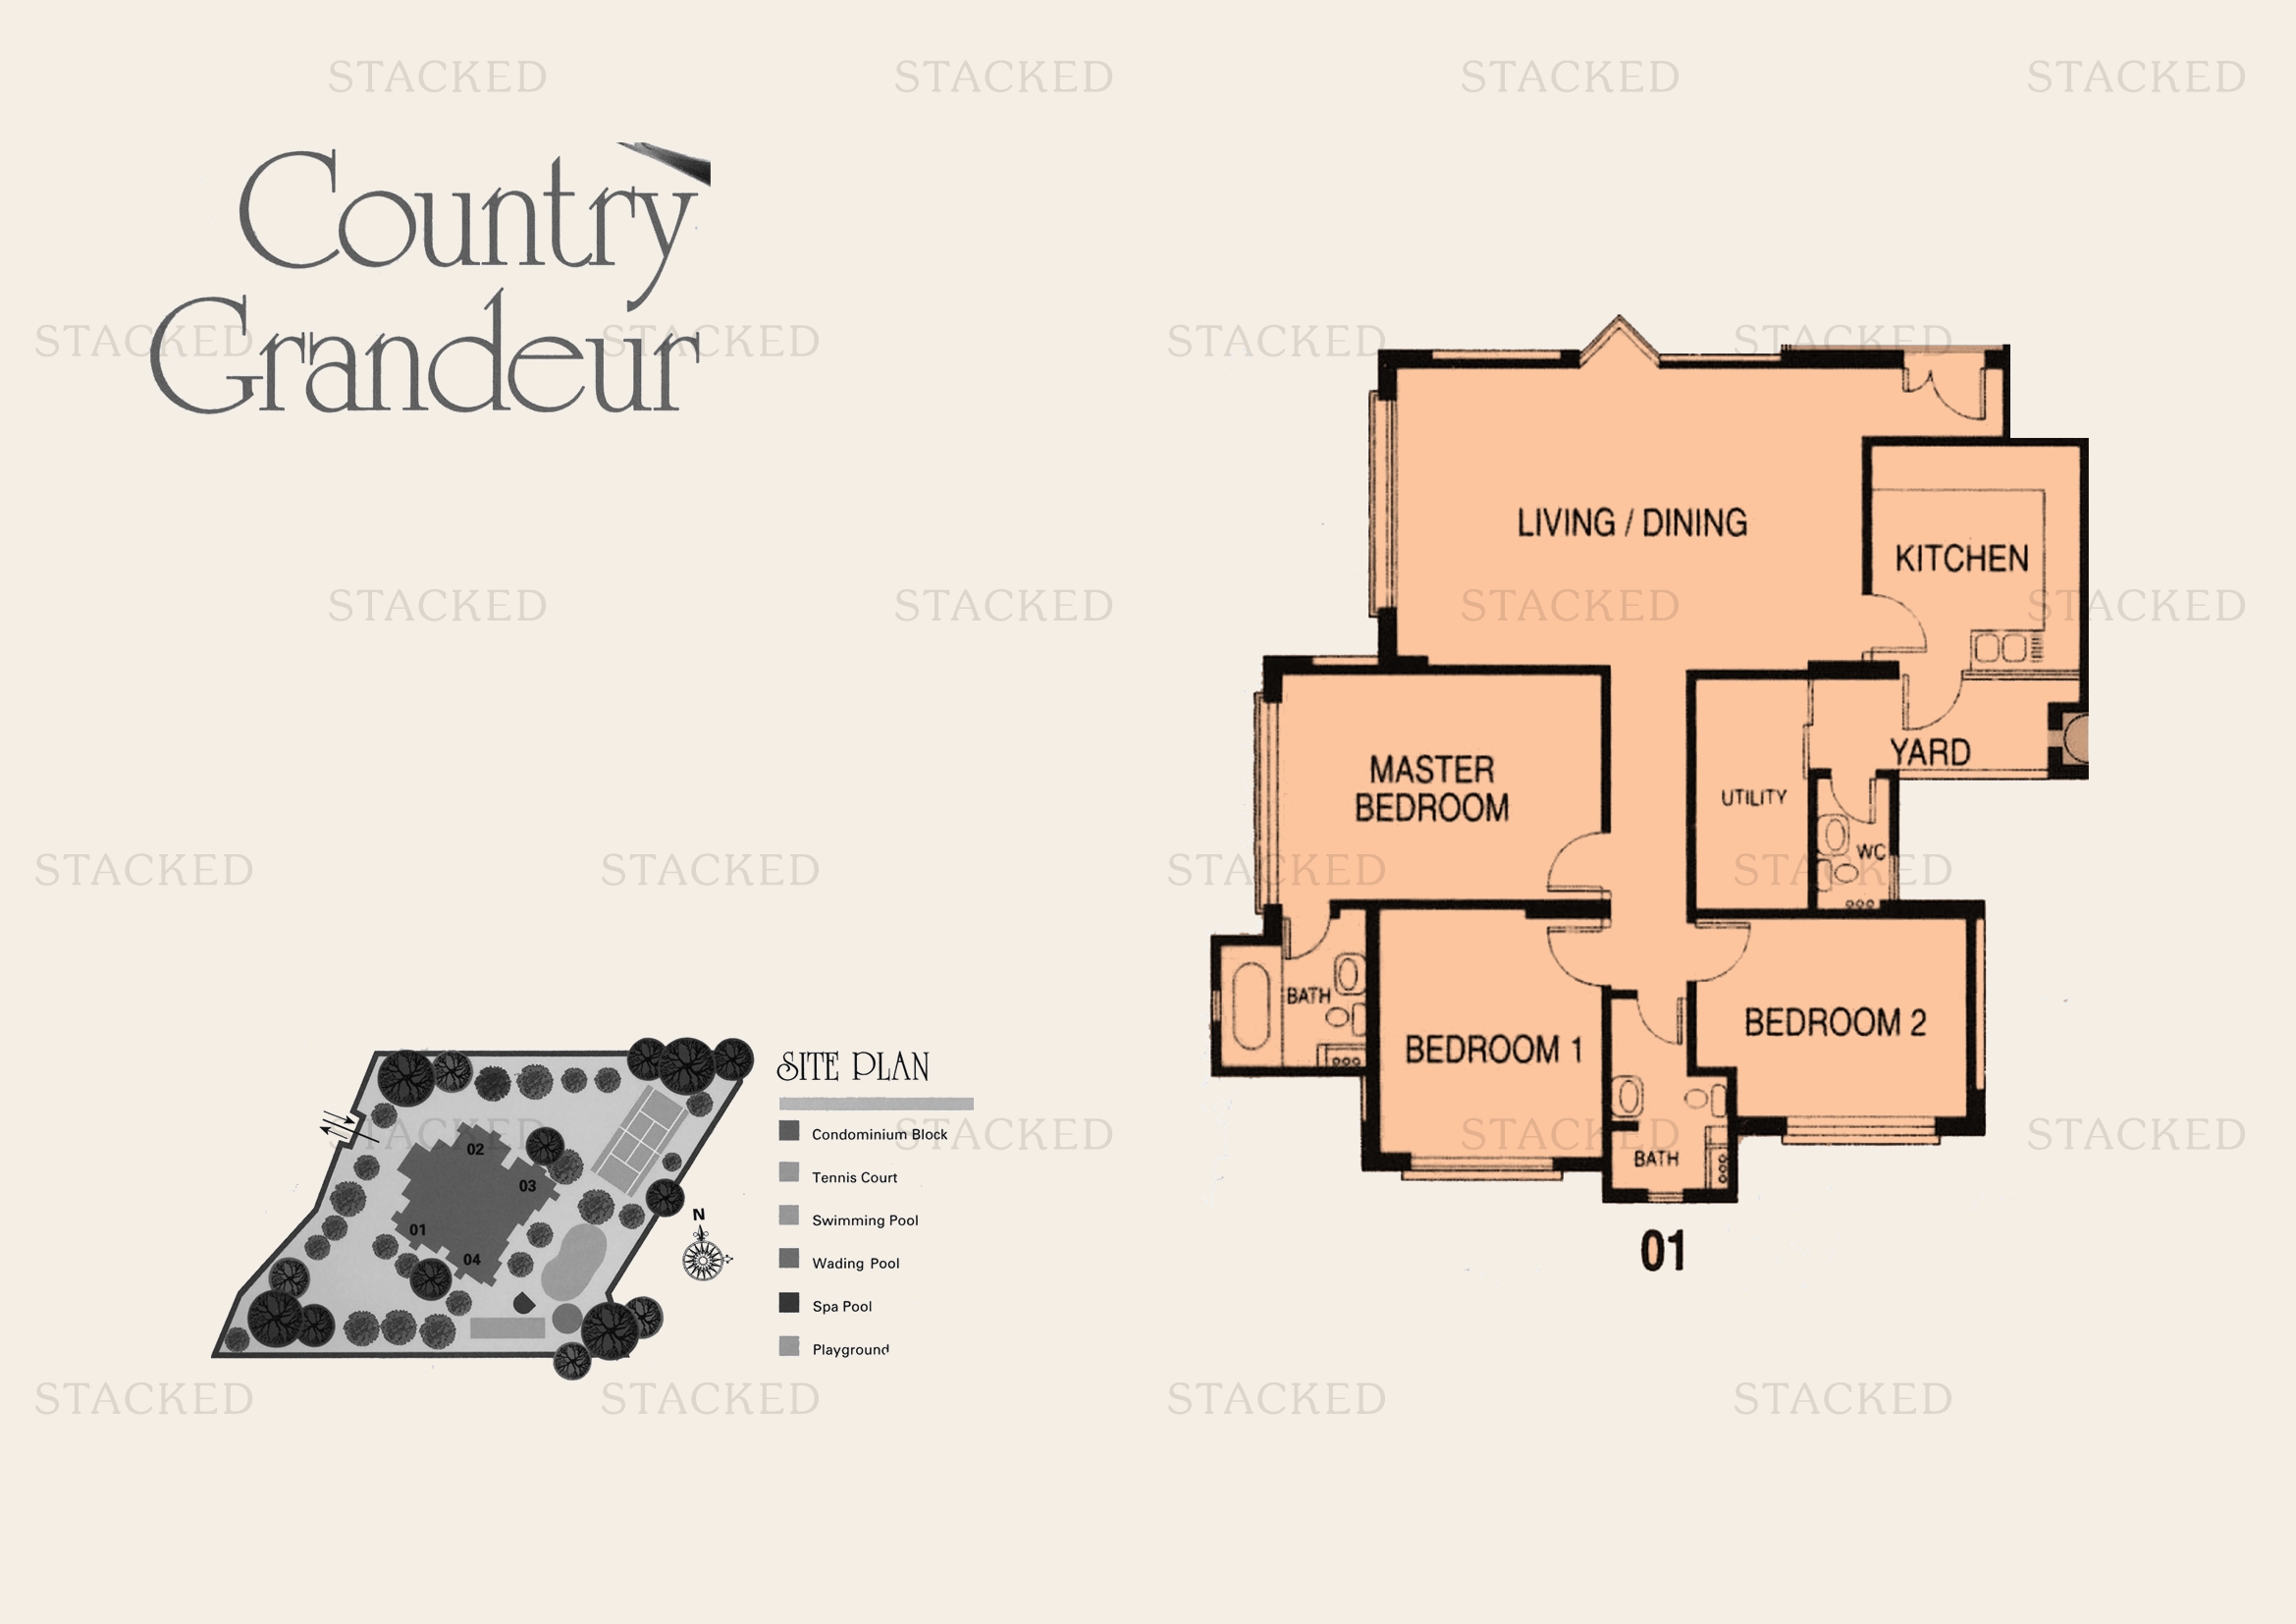 Country Grandeur floor plan